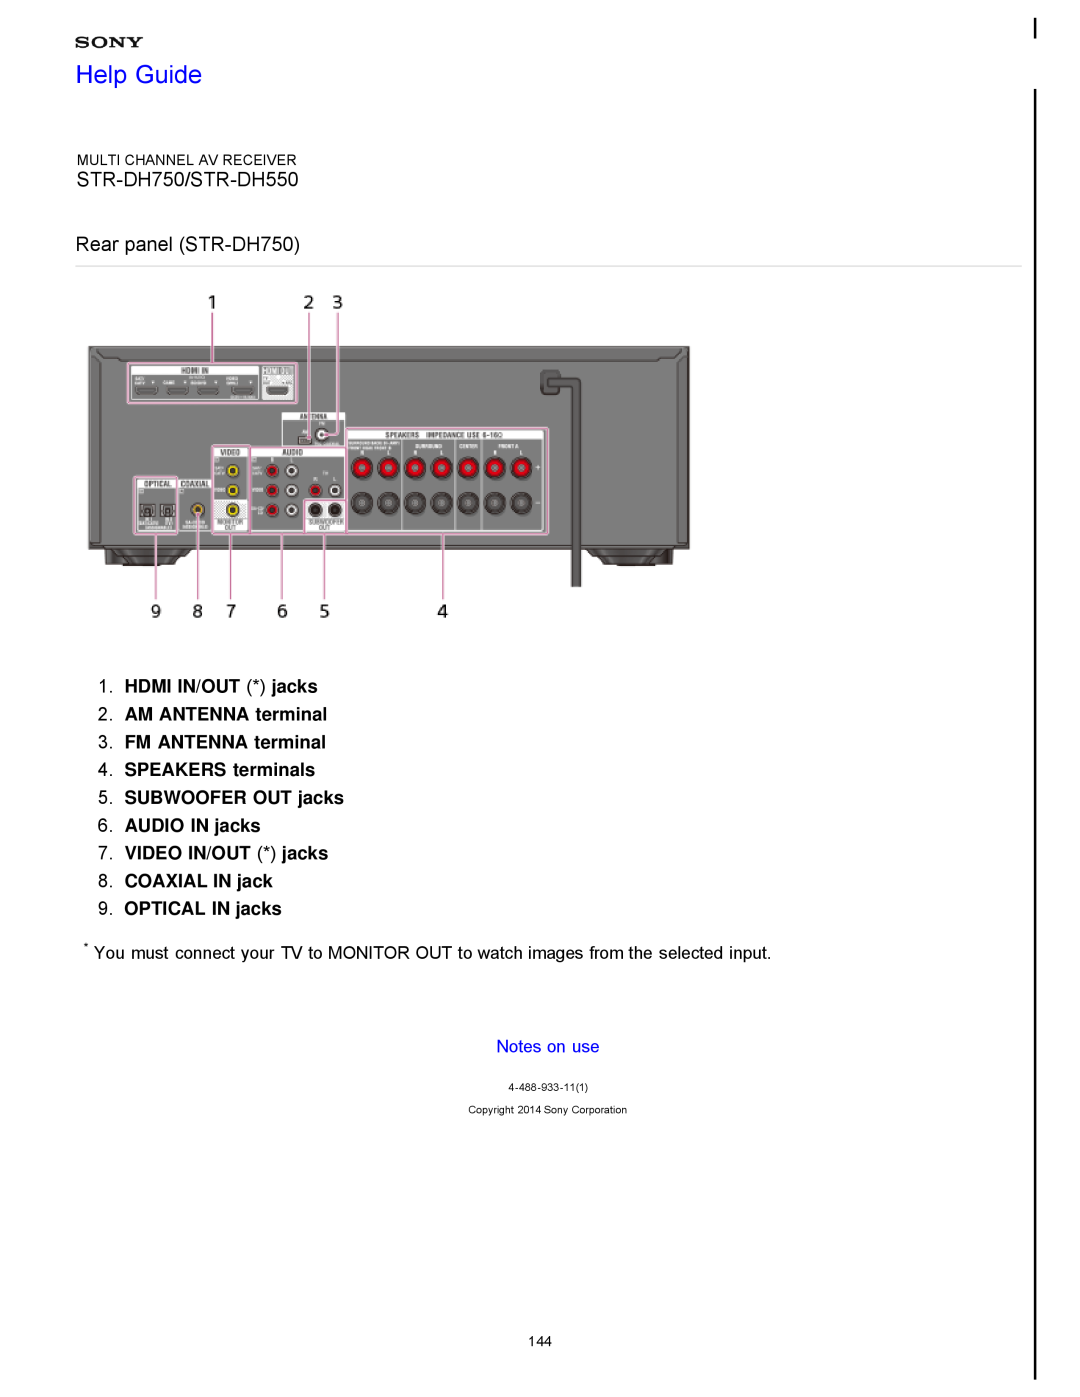 Sony STR-FH750 manual STR-DH750/STR-DH550 Rear panel STR-DH750, Help Guide, HDMI IN/OUT * jacks 2.AM ANTENNA terminal 